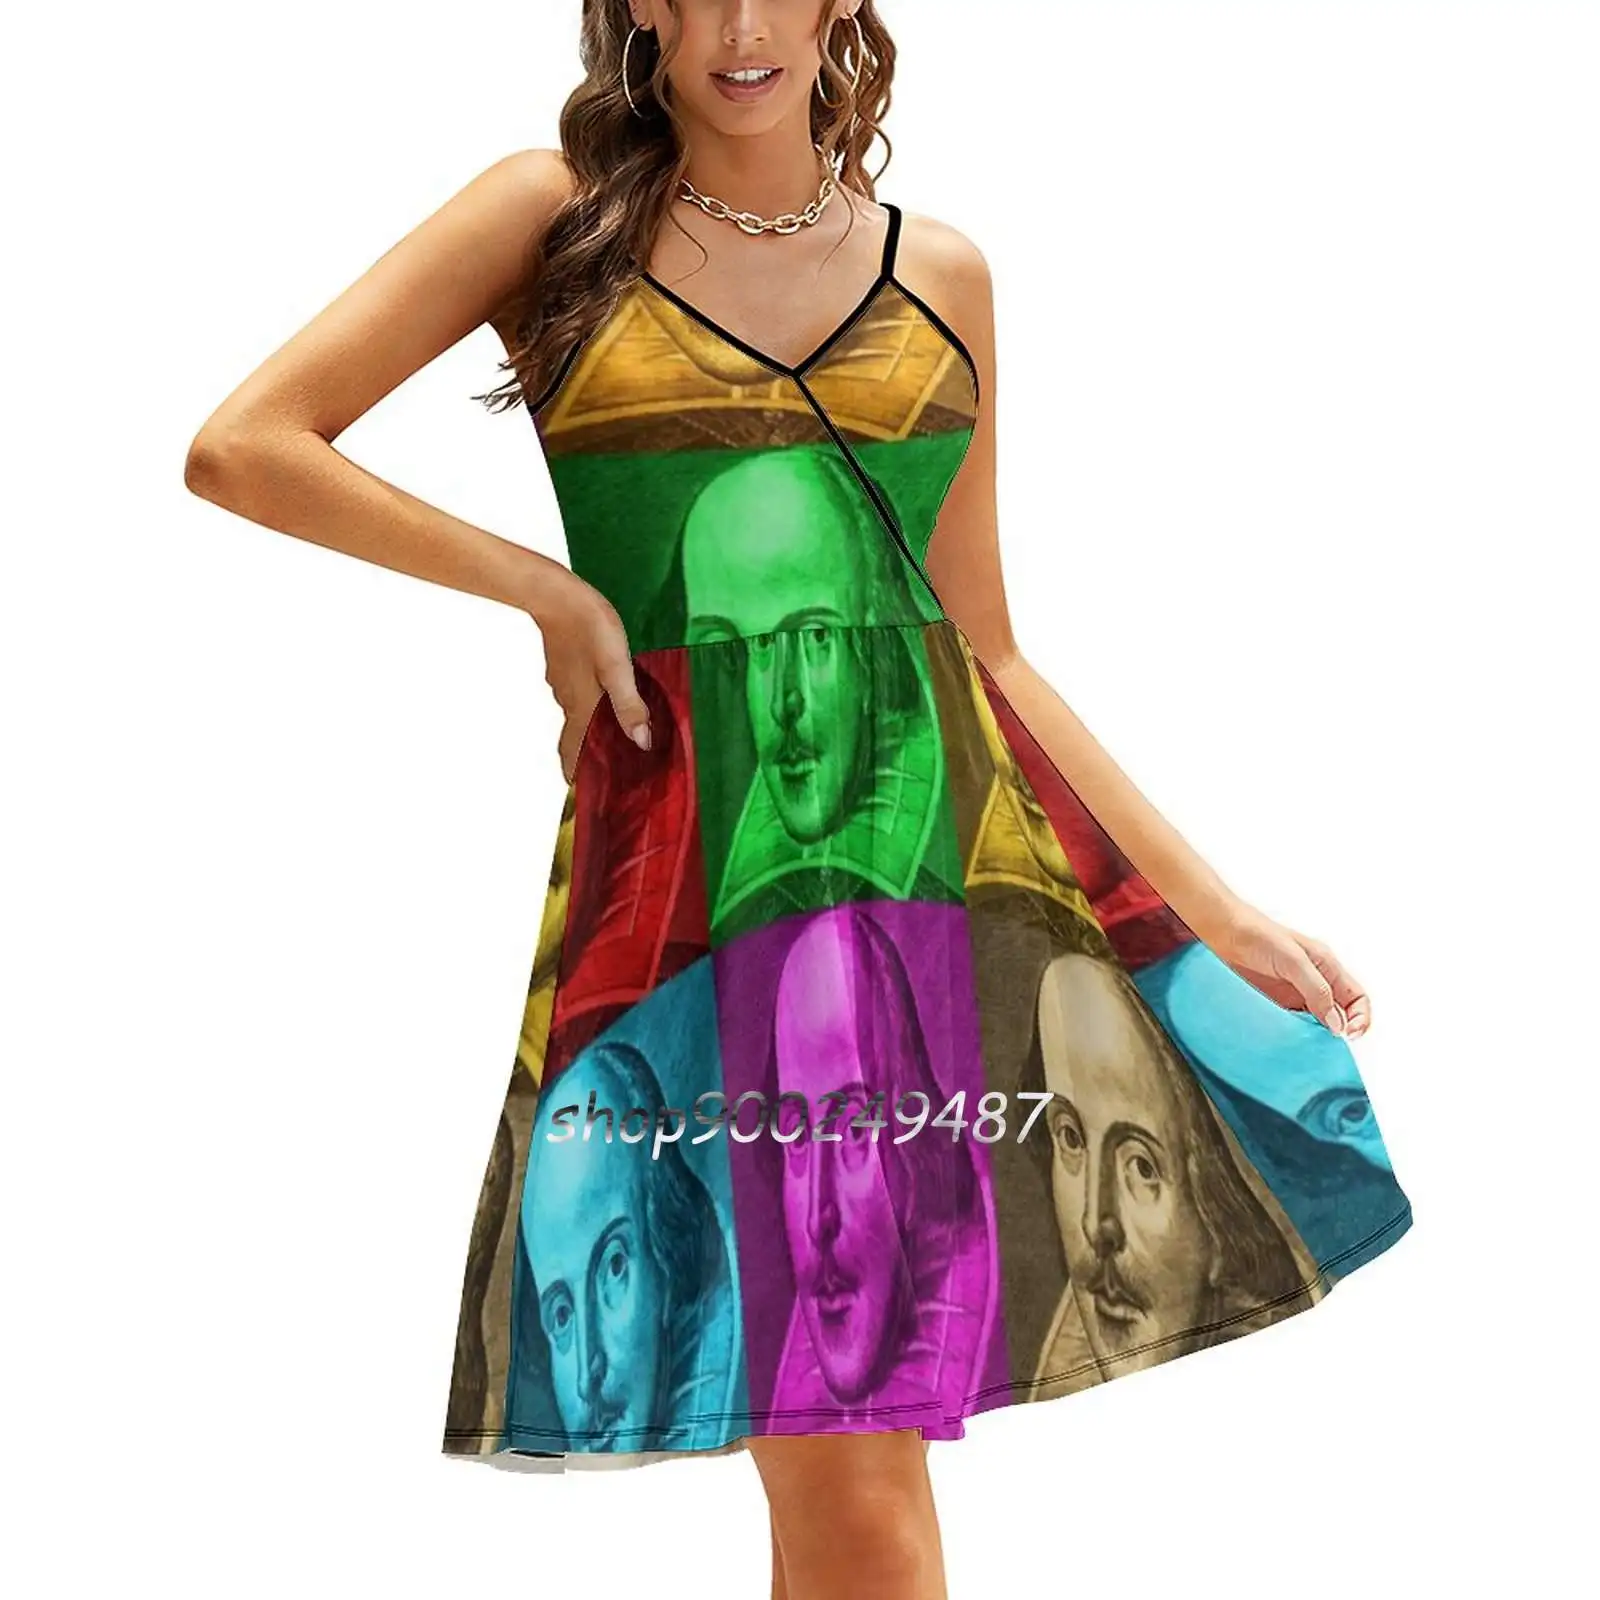 

Платье на бретельках с рисунком Вильяма Шекспира, модное пикантное ТРАПЕЦИЕВИДНОЕ ПЛАТЬЕ в стиле поп-арт, Вильям Шекспира, на лето